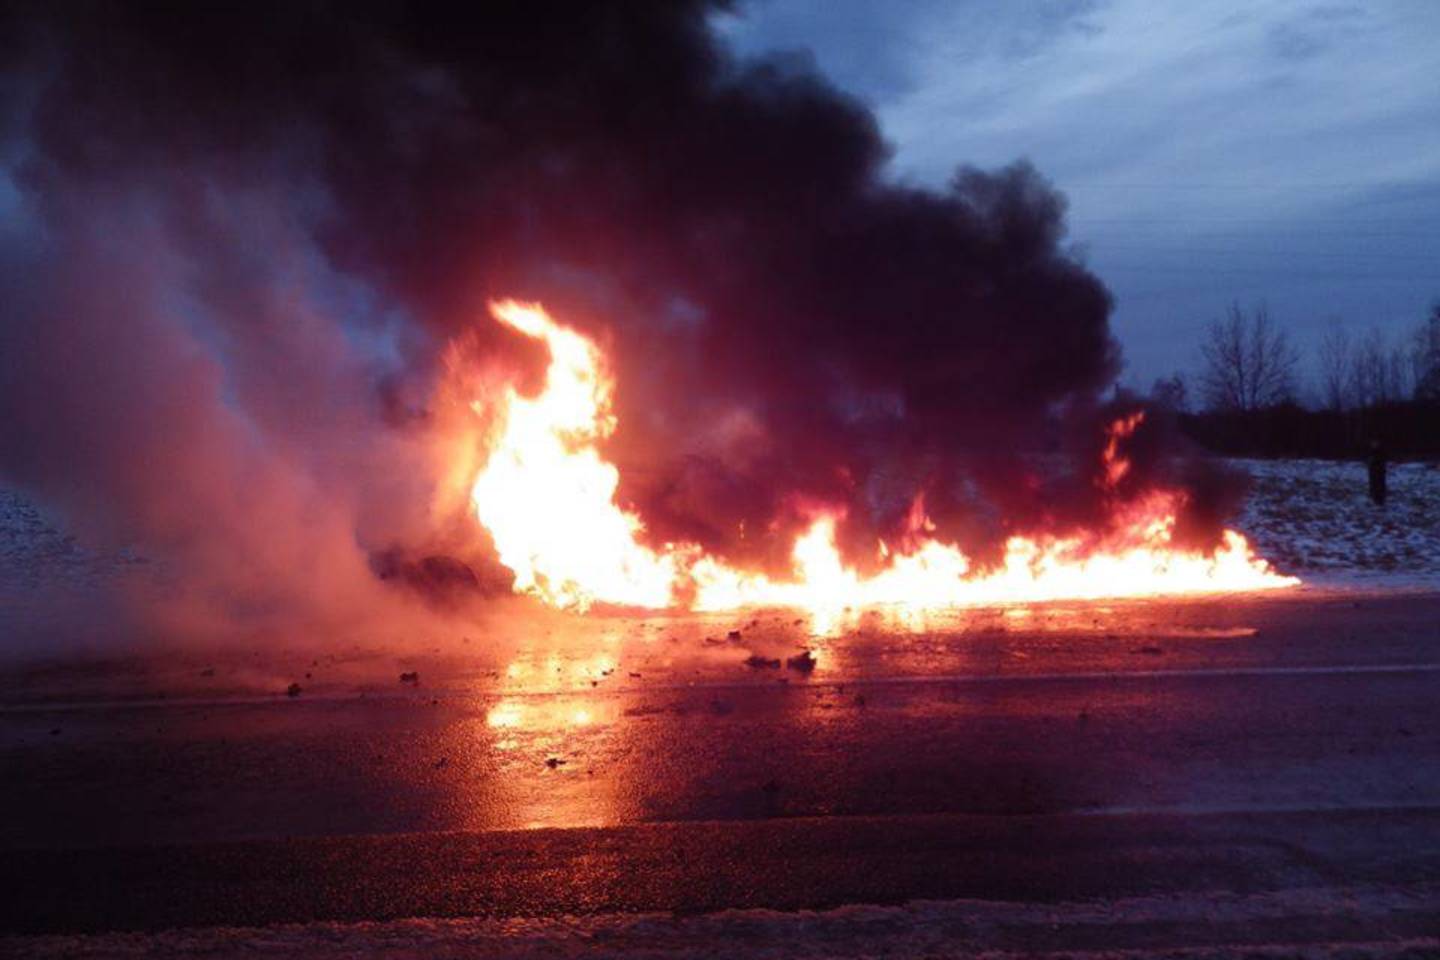  Molėtų r. kelyje užsiliepsnojęs sudegė dyzelinis „Nissan Qashqai“.<br> Facebook/Molėtų priešgaisrinė gelbėjimo tarnyba nuotr.